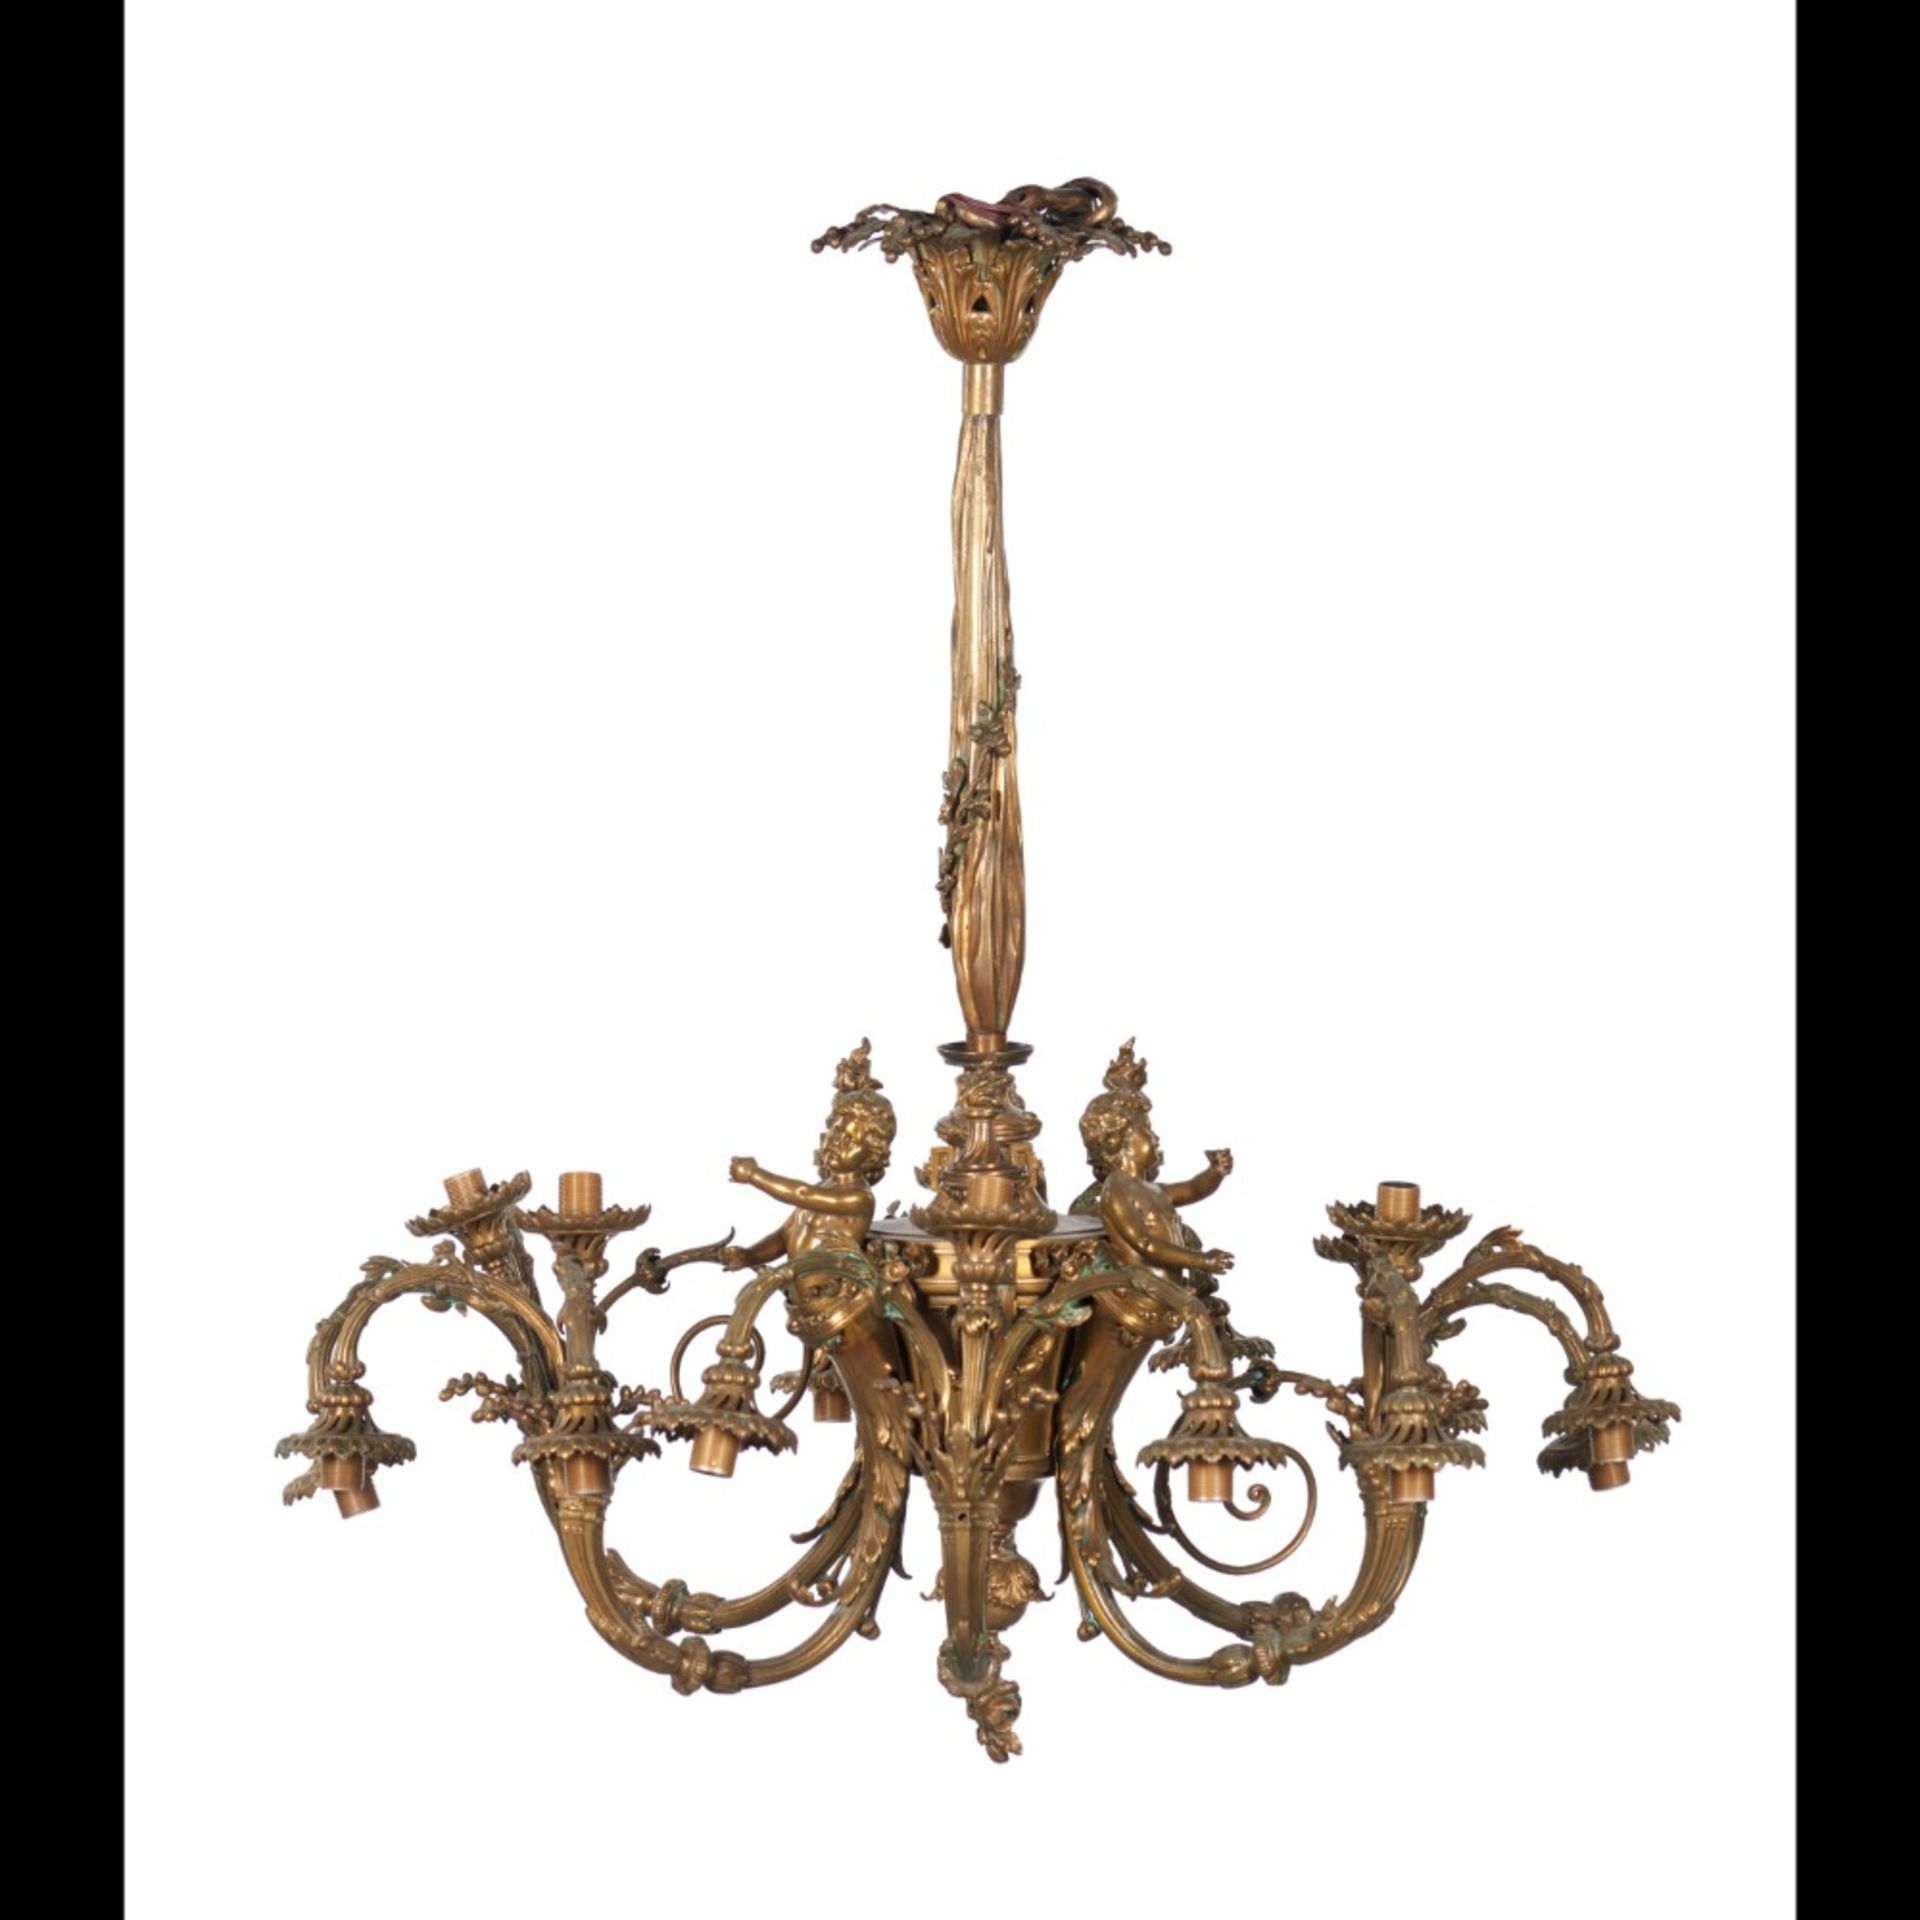  An Eighteen-light French chandelier